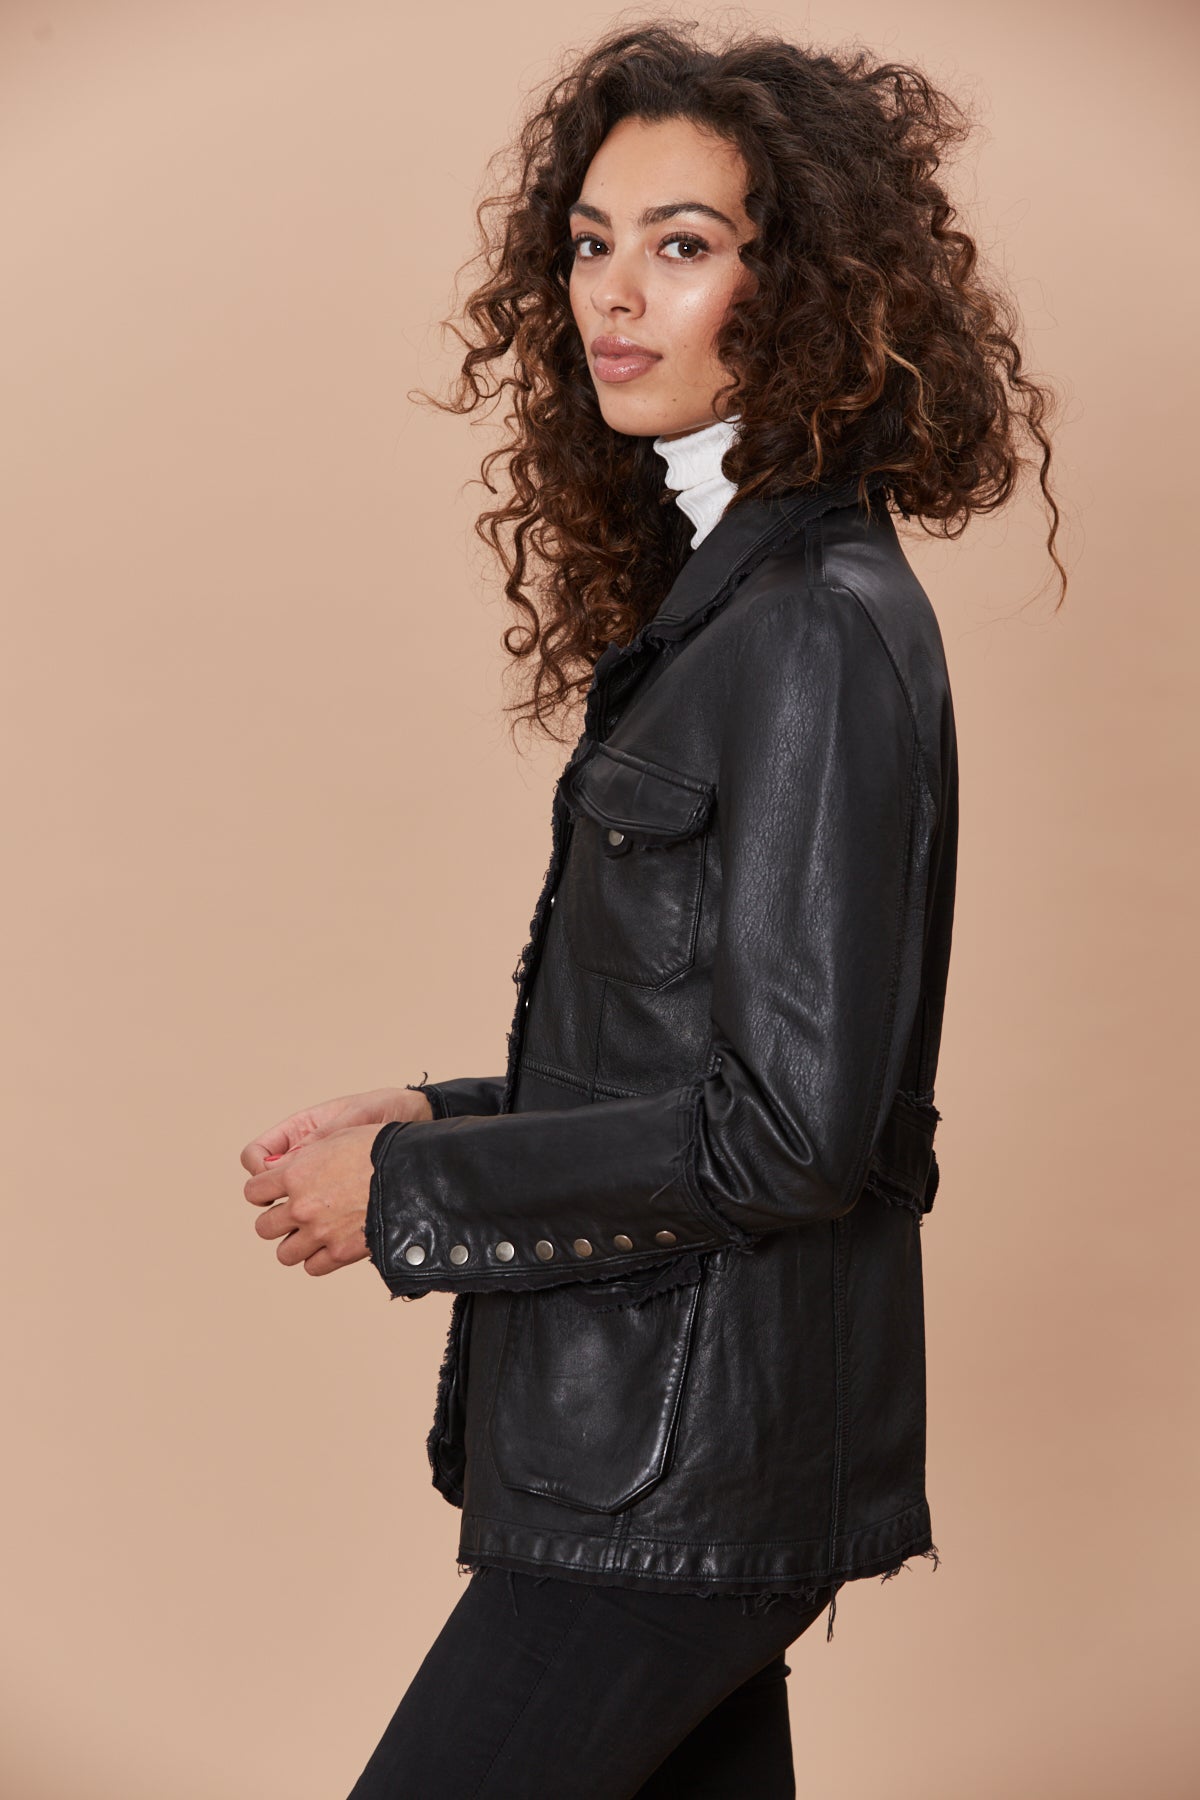 leather utility jacket